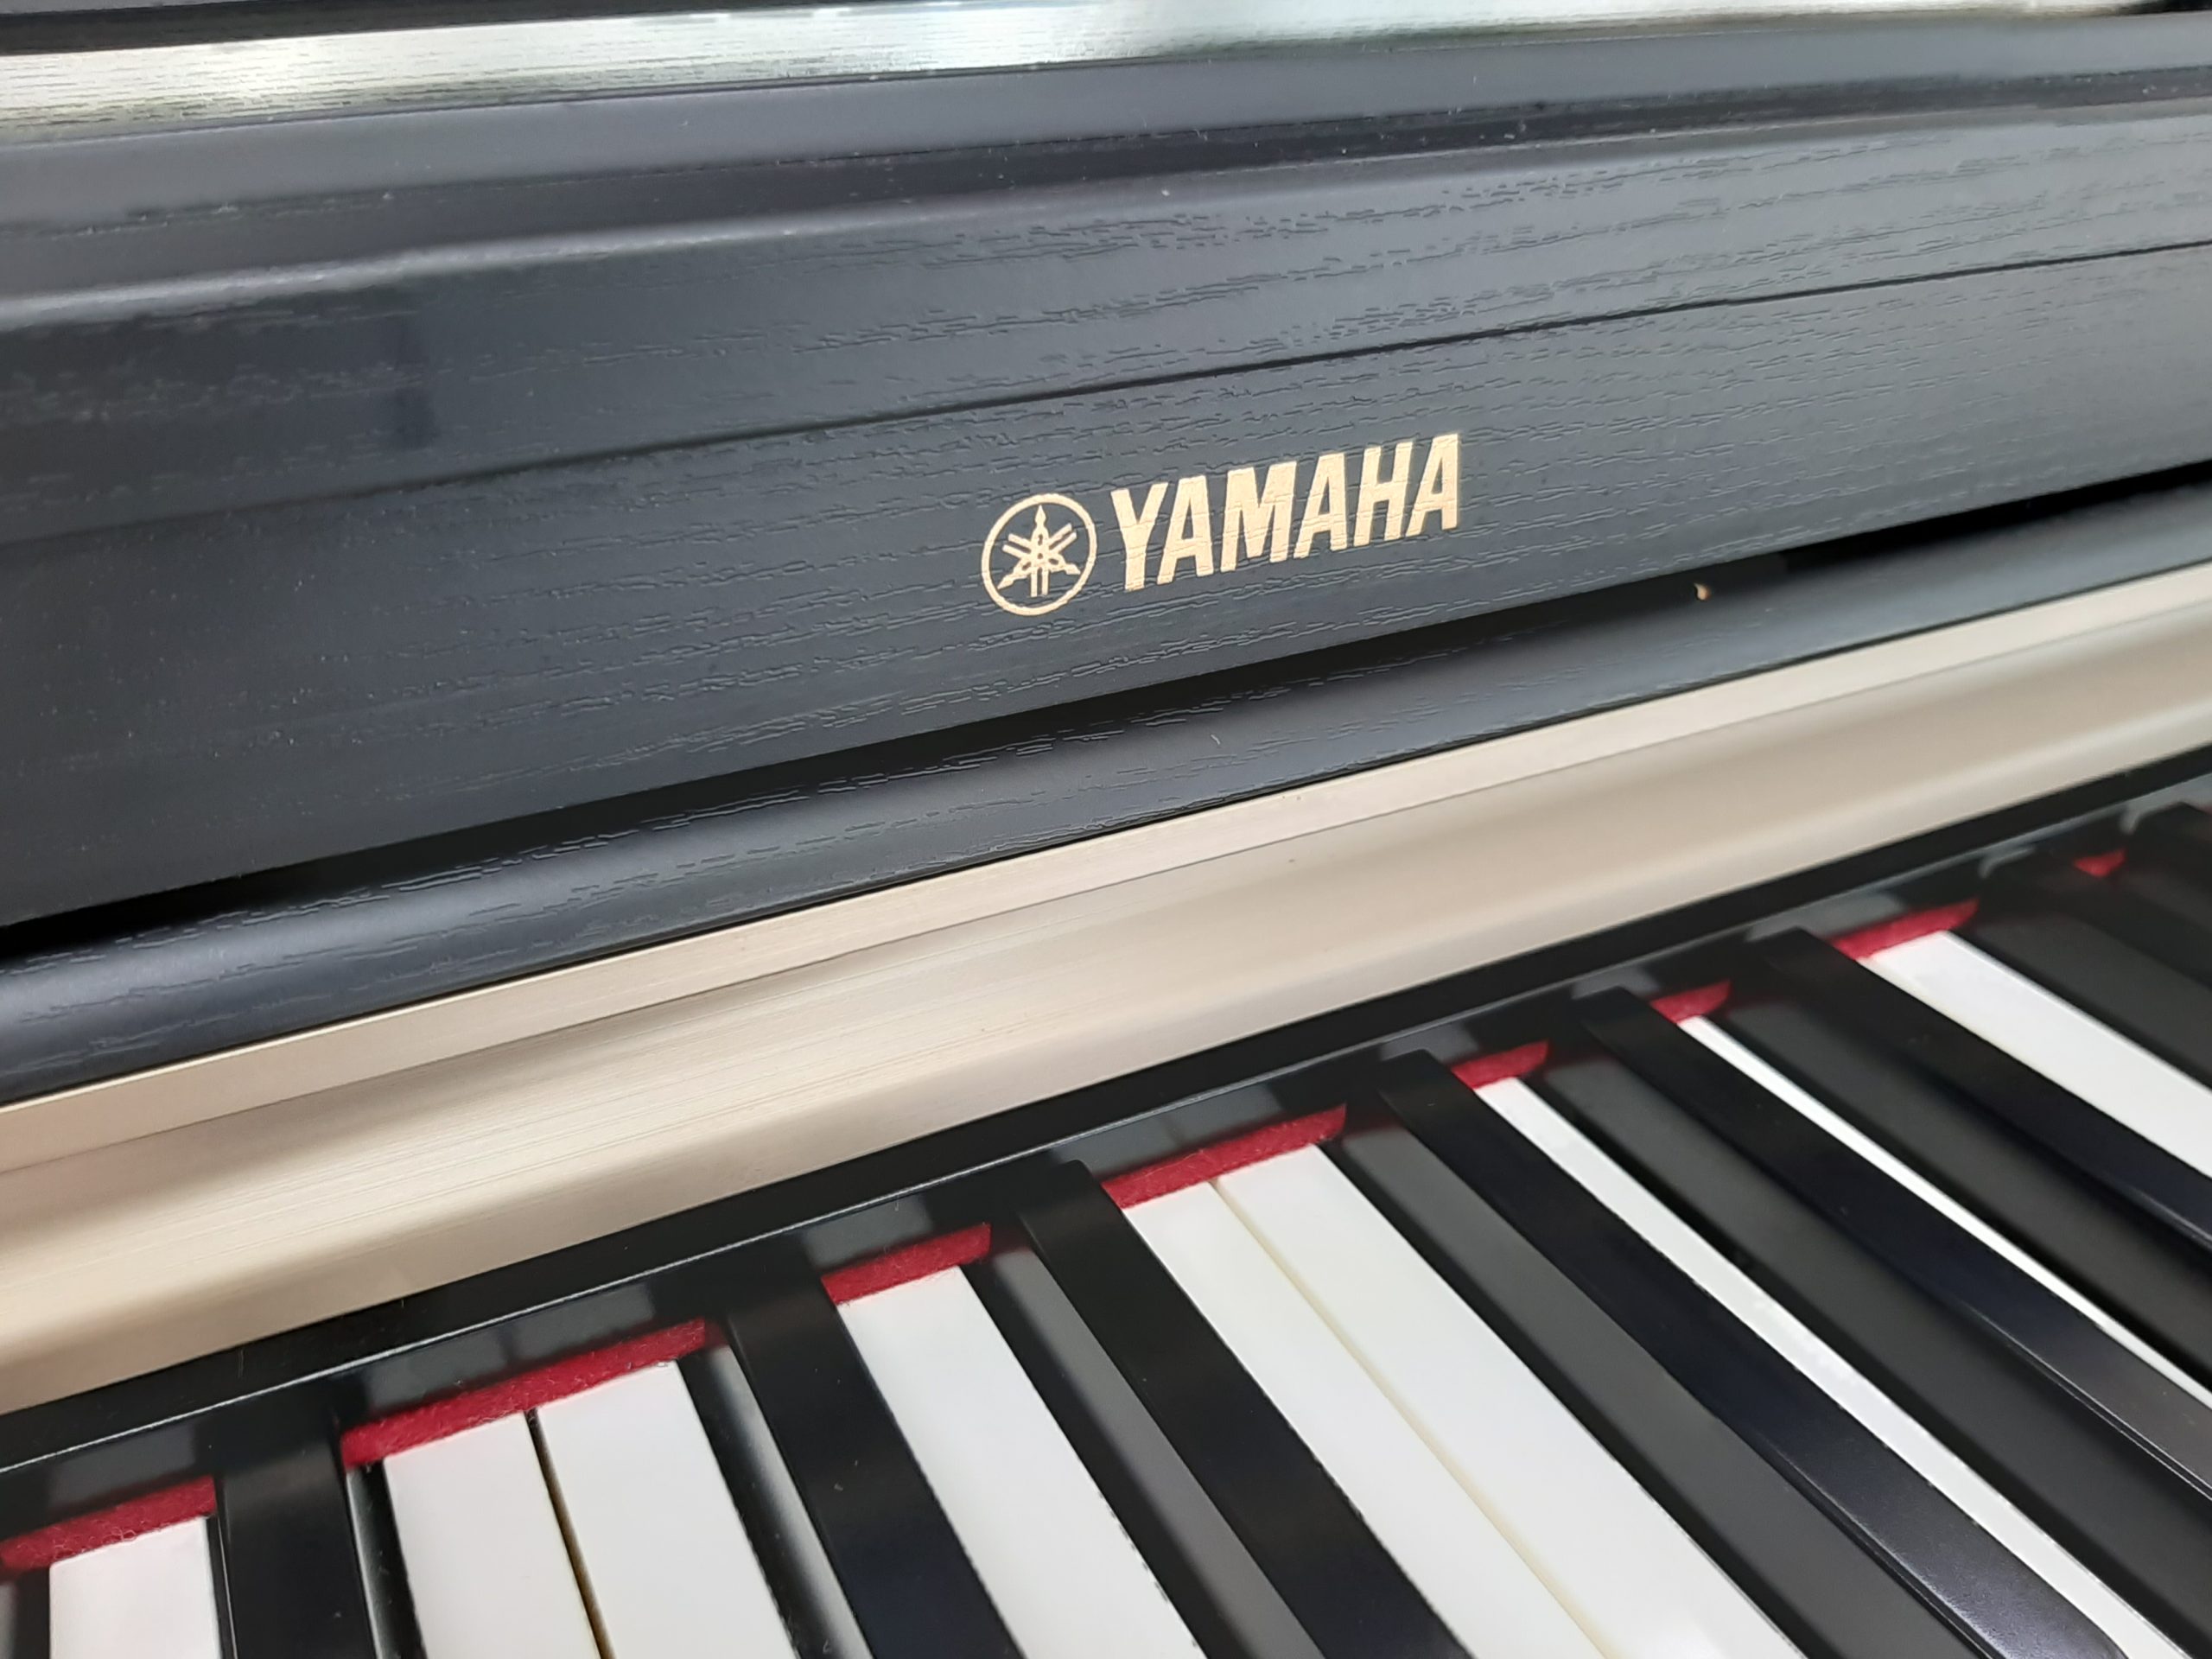 中古電子ピアノ YAMAHA ARIUS YDP-162B